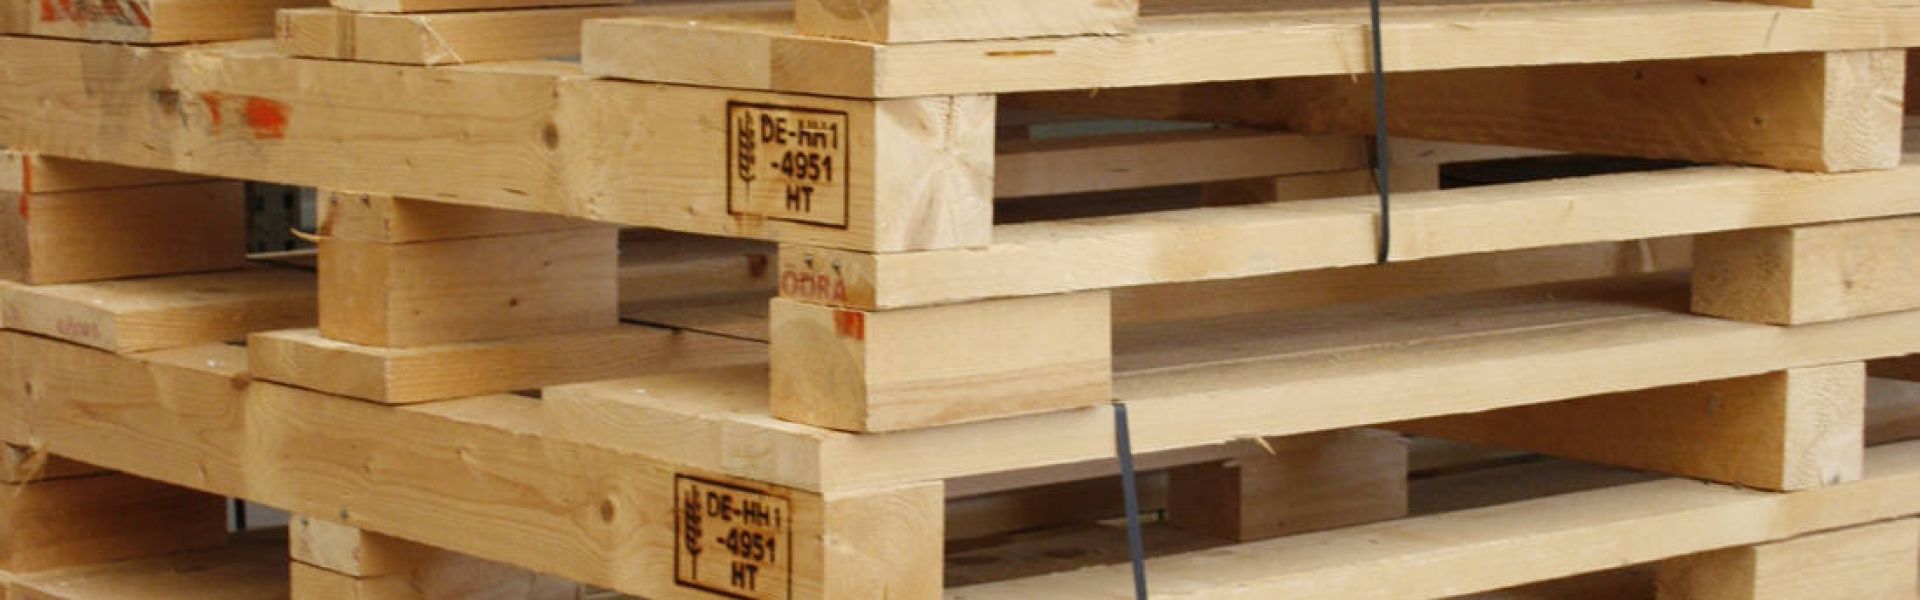 Übereinandergestapelte Holzpaletten für die Weiterverarbeitung in den Werkstätten.